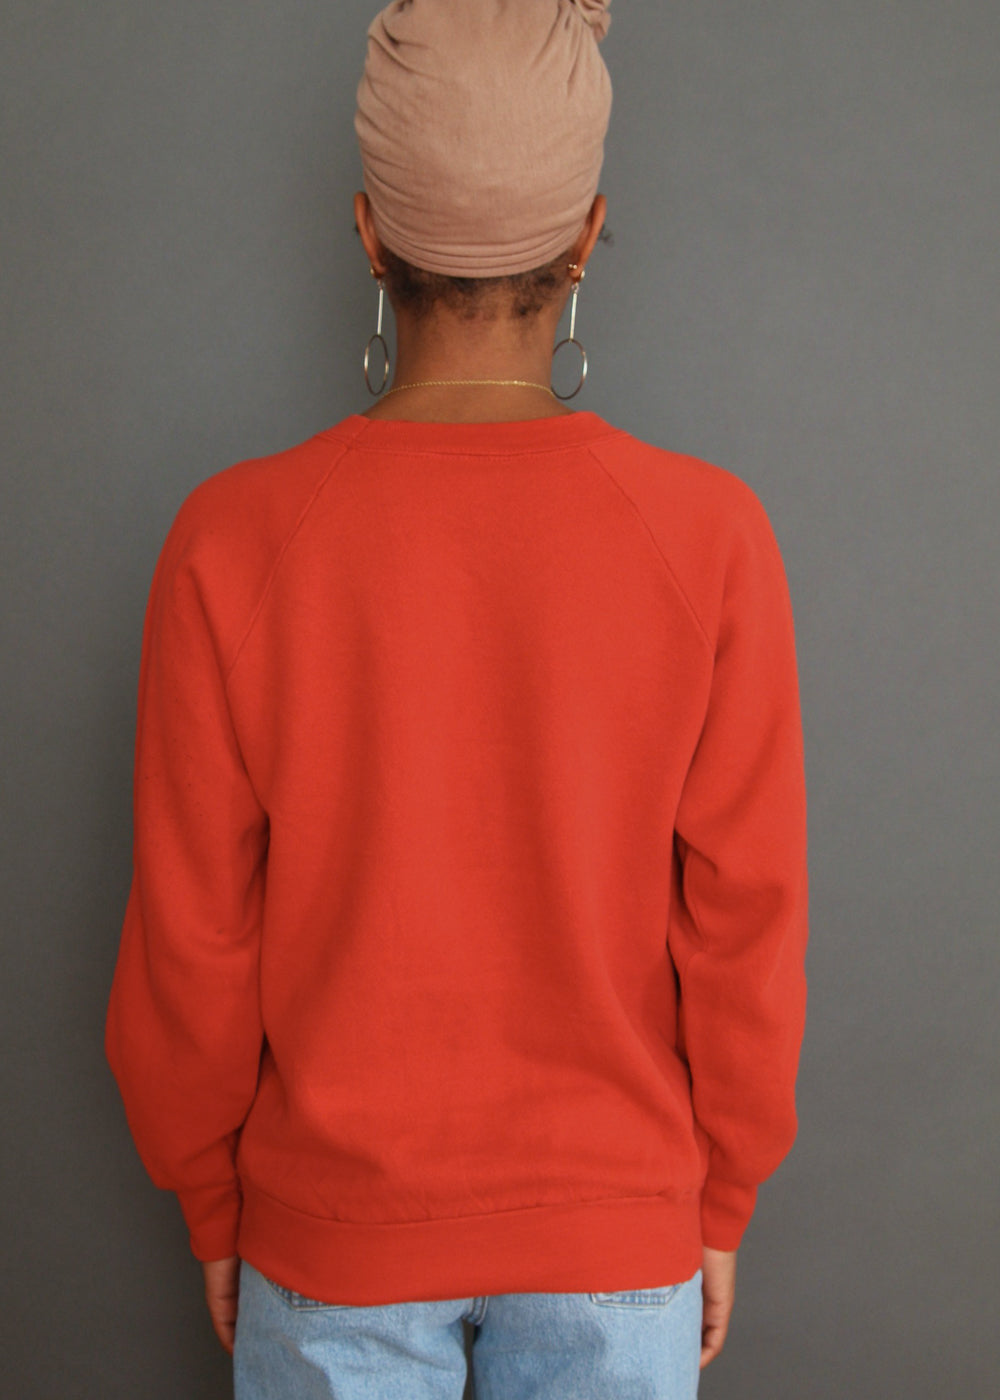 Vintage 1980s St. Louis Cardinals Sweatshirt – Electric West